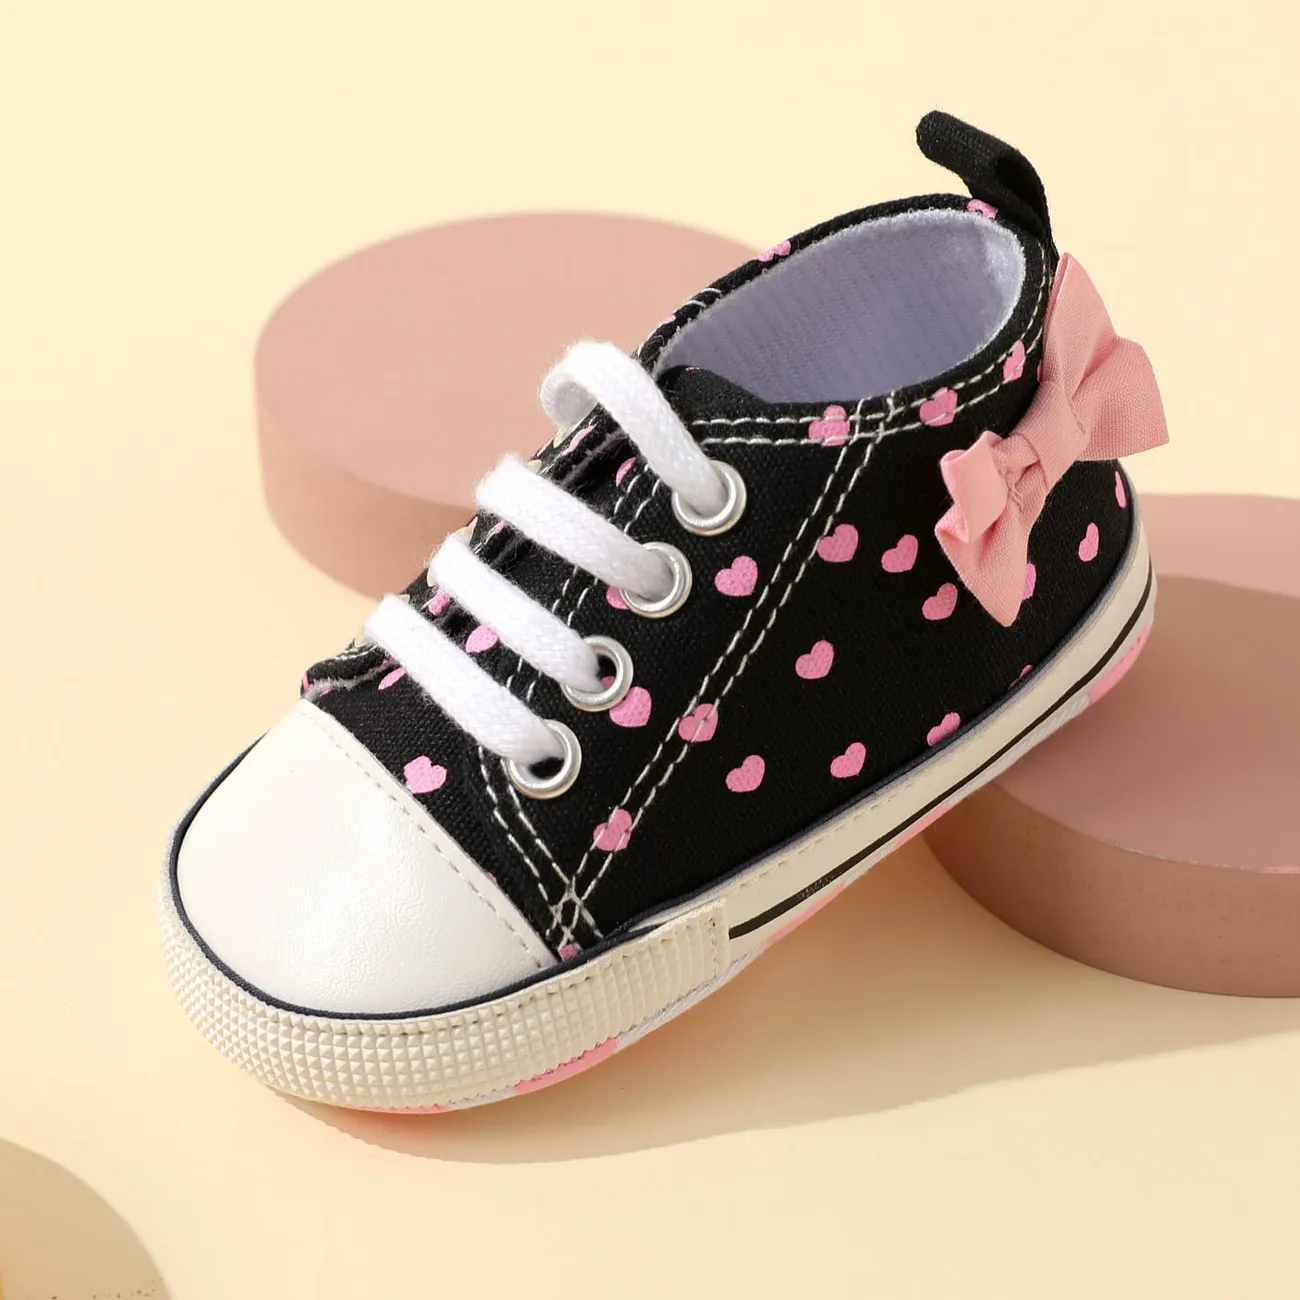 Baby / Toddler Heart Pattern Bow Back Prewalker Shoes Pink big image 1